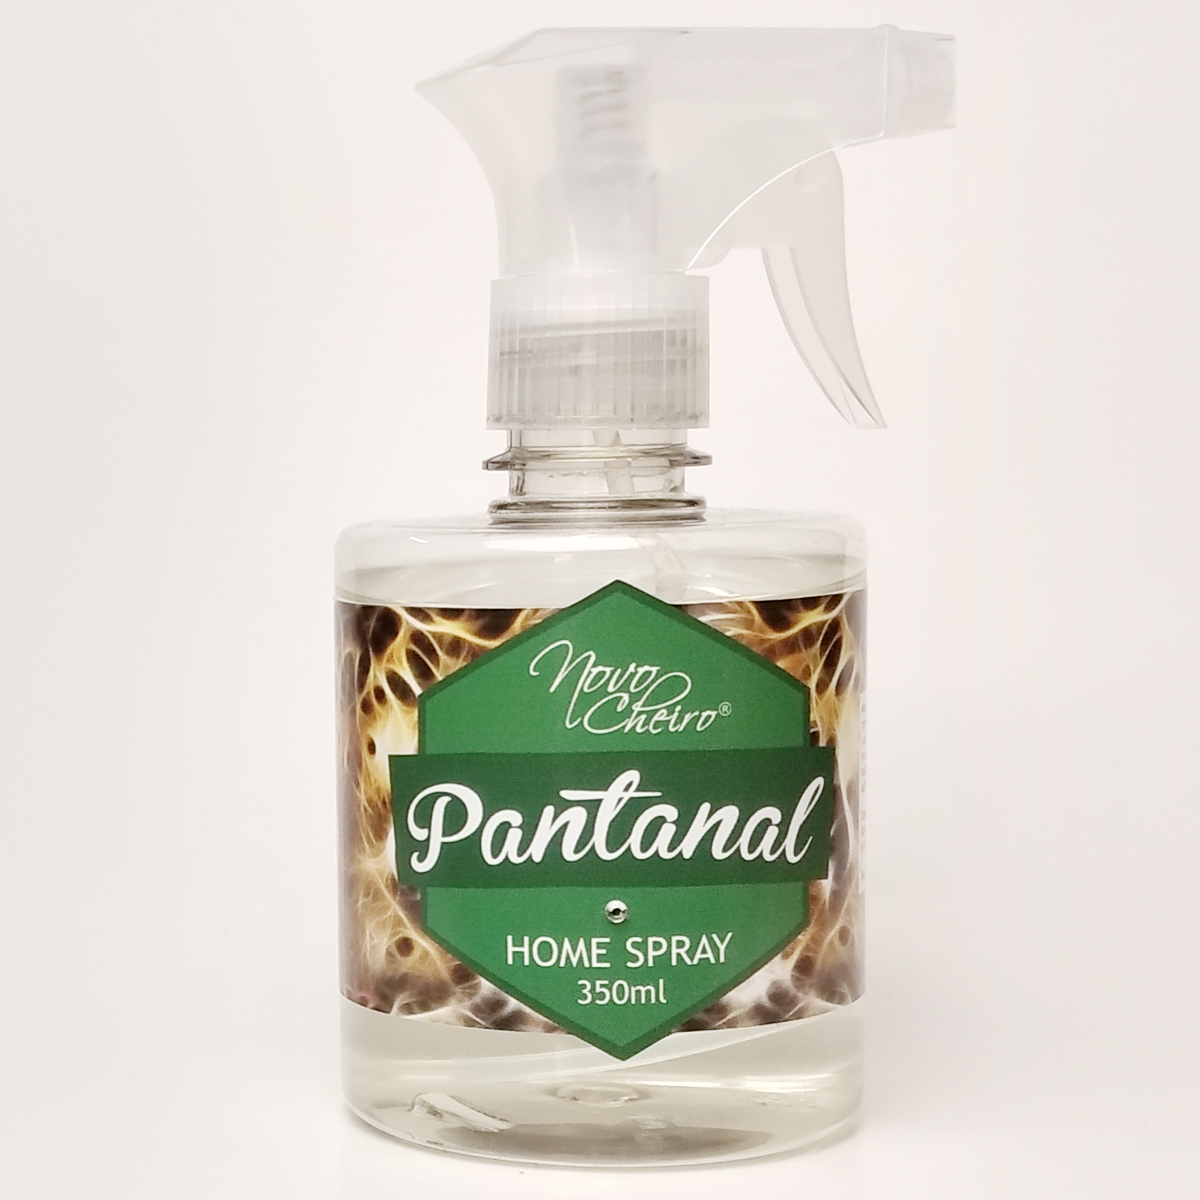 aromatizador-home-spray-350ml-pantanal-novo-cheiro